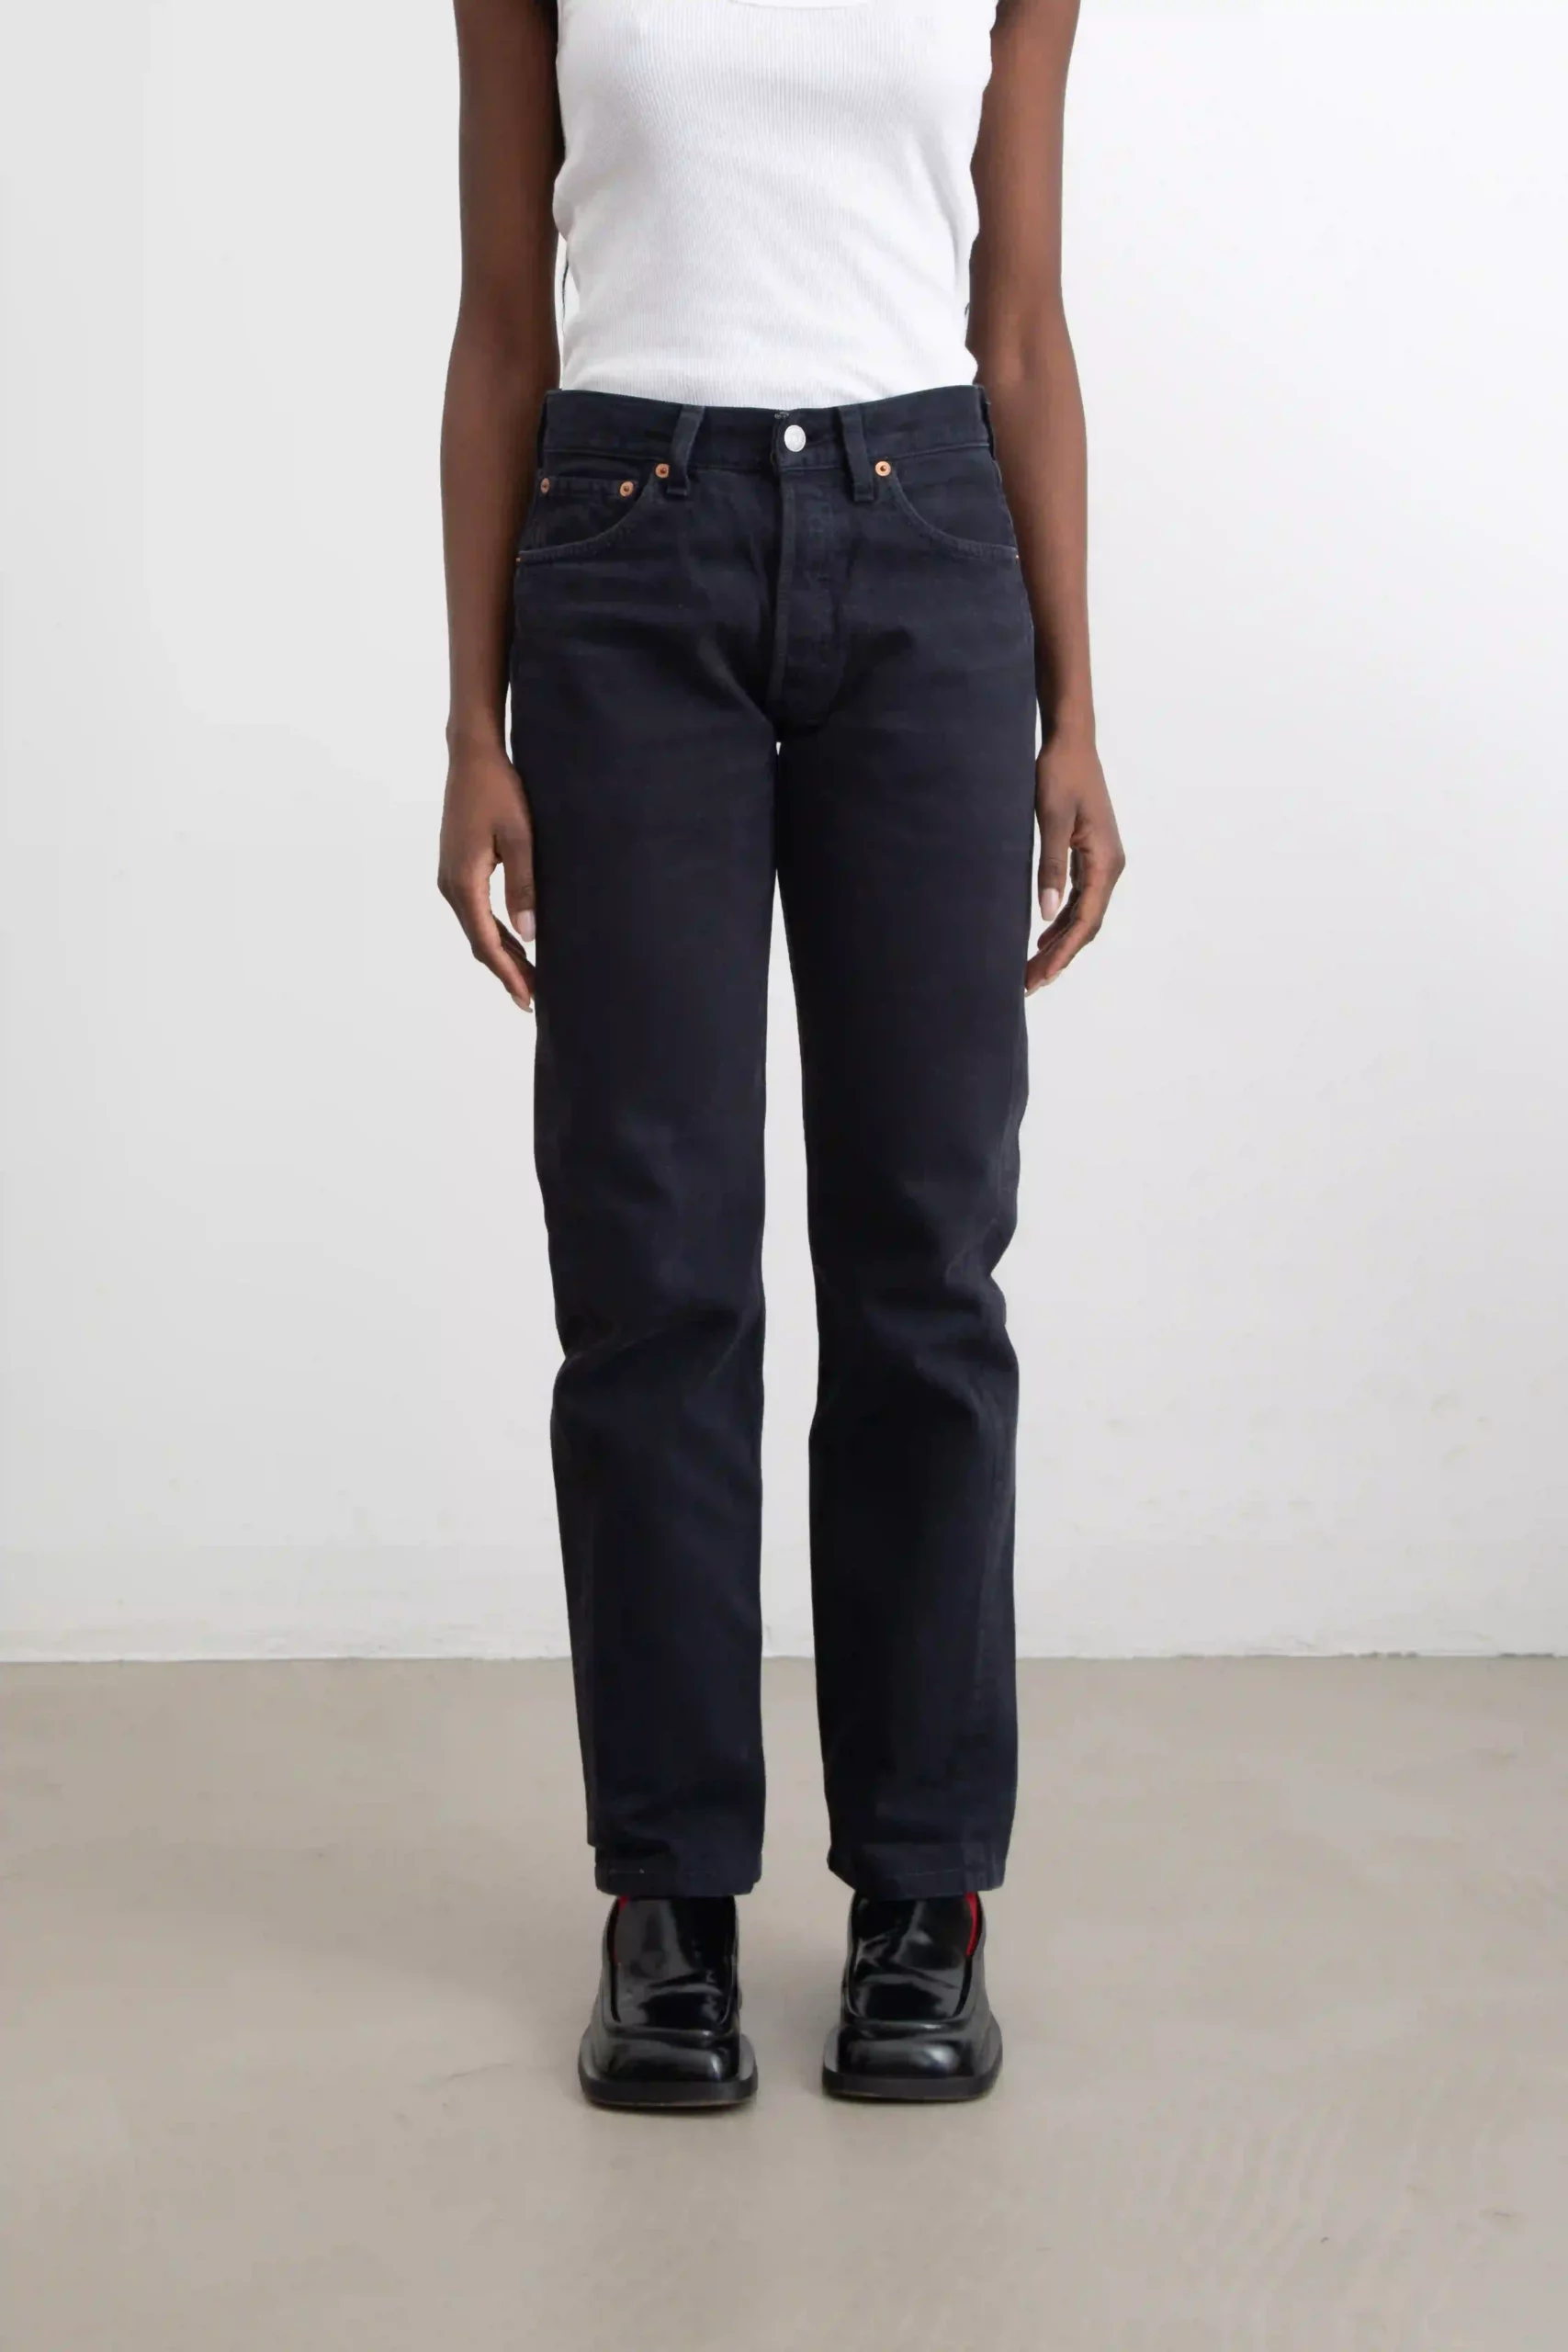 Pantalone jeans Levi’s modello 501 vintage, classico e intramontabile, in drill nero, lavaggio scuro. Cuciture forti color nero. Cinque tasche. All'estremità della tasca posteriore destra vi è l’iconica linguetta rossa Levi’s.